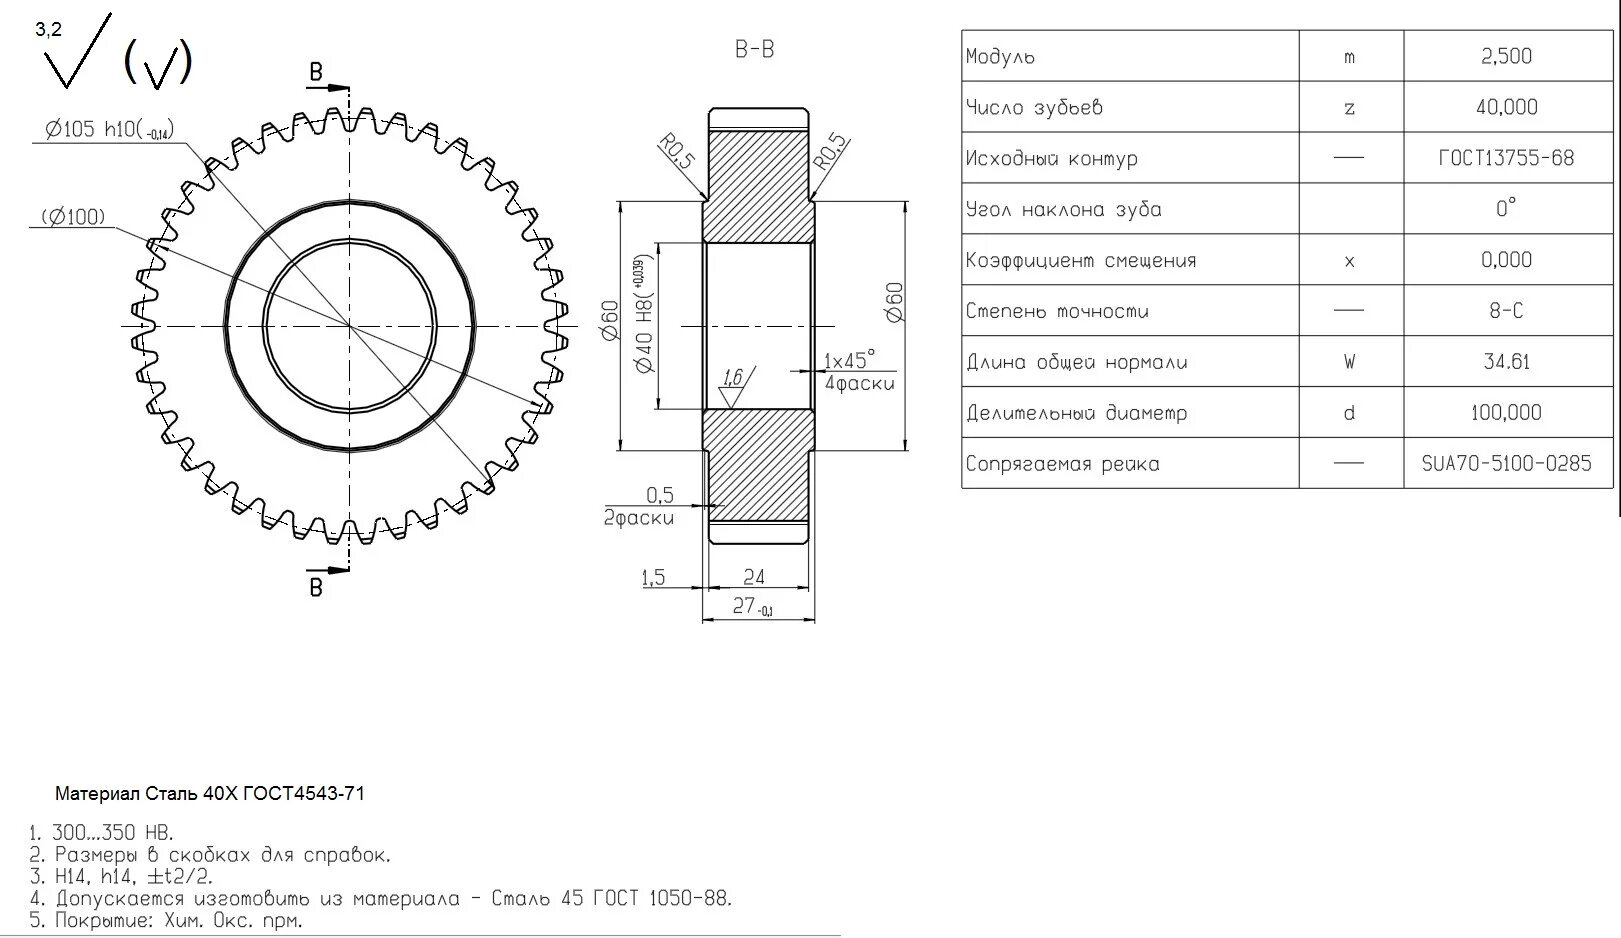 Шестерня цилиндрическая прямозубая (m5,5 z40). Зубчатое колесо модуль 2.5 чертеж. Шестерня КС.07.08.004 чертеж. Модуль 0.5 зубчатого колеса.